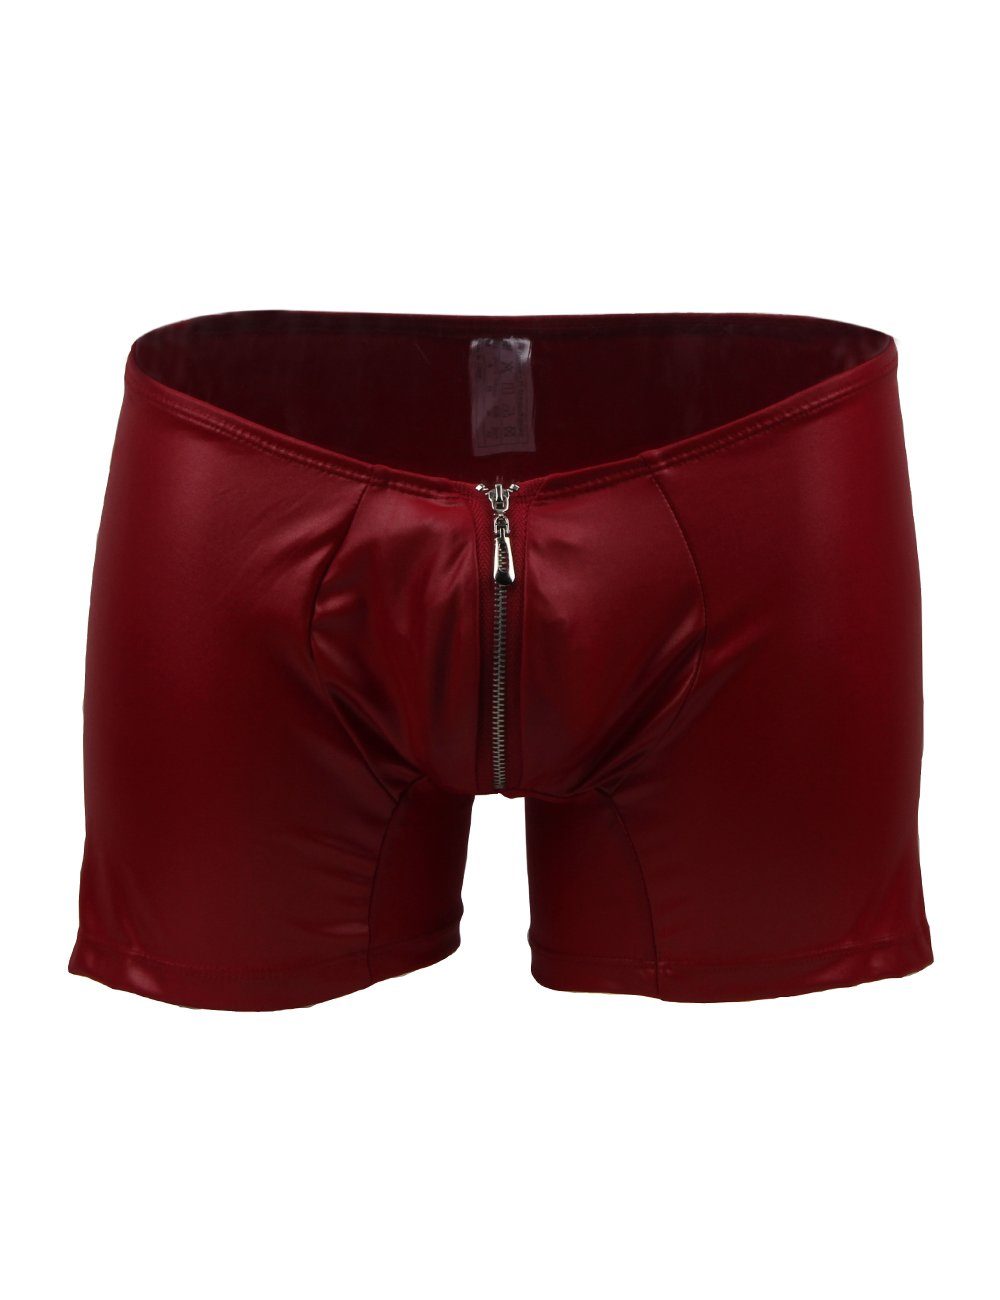 Shorts Slip Herren Wetlook Männer Lau-Fashion Zipper Hose Boxershorts Rot S/M Boxer Unterwäsche